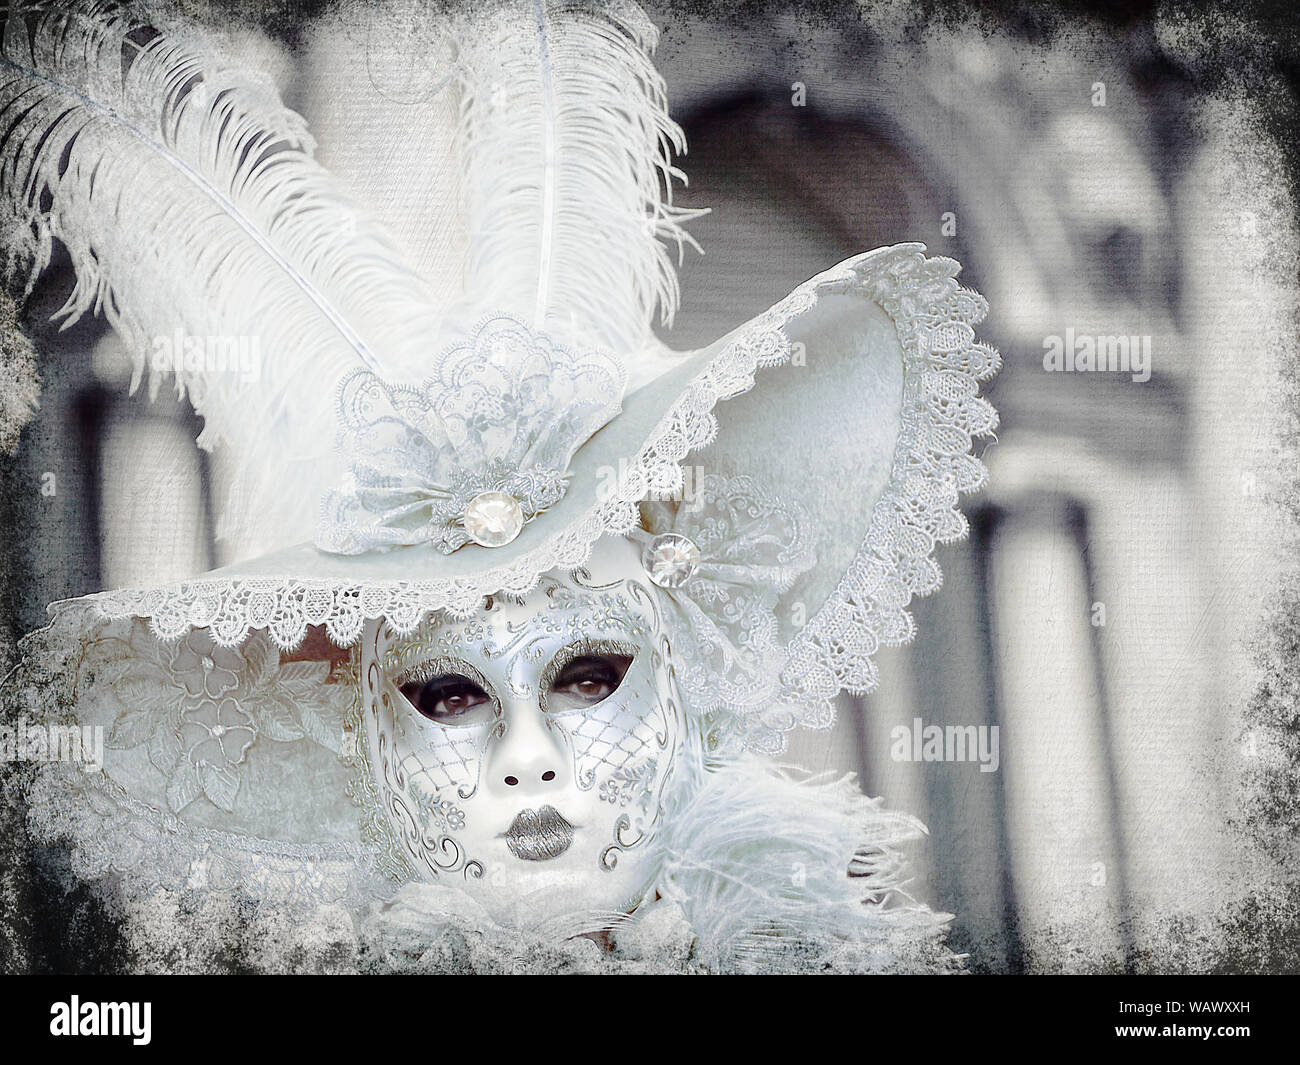 Carnaval de Venise (Carnevale) prend place à l'approche de carême. Voir la ville à son plus colorés, avec des masques, des costumes, et bals masqués opulents. Banque D'Images